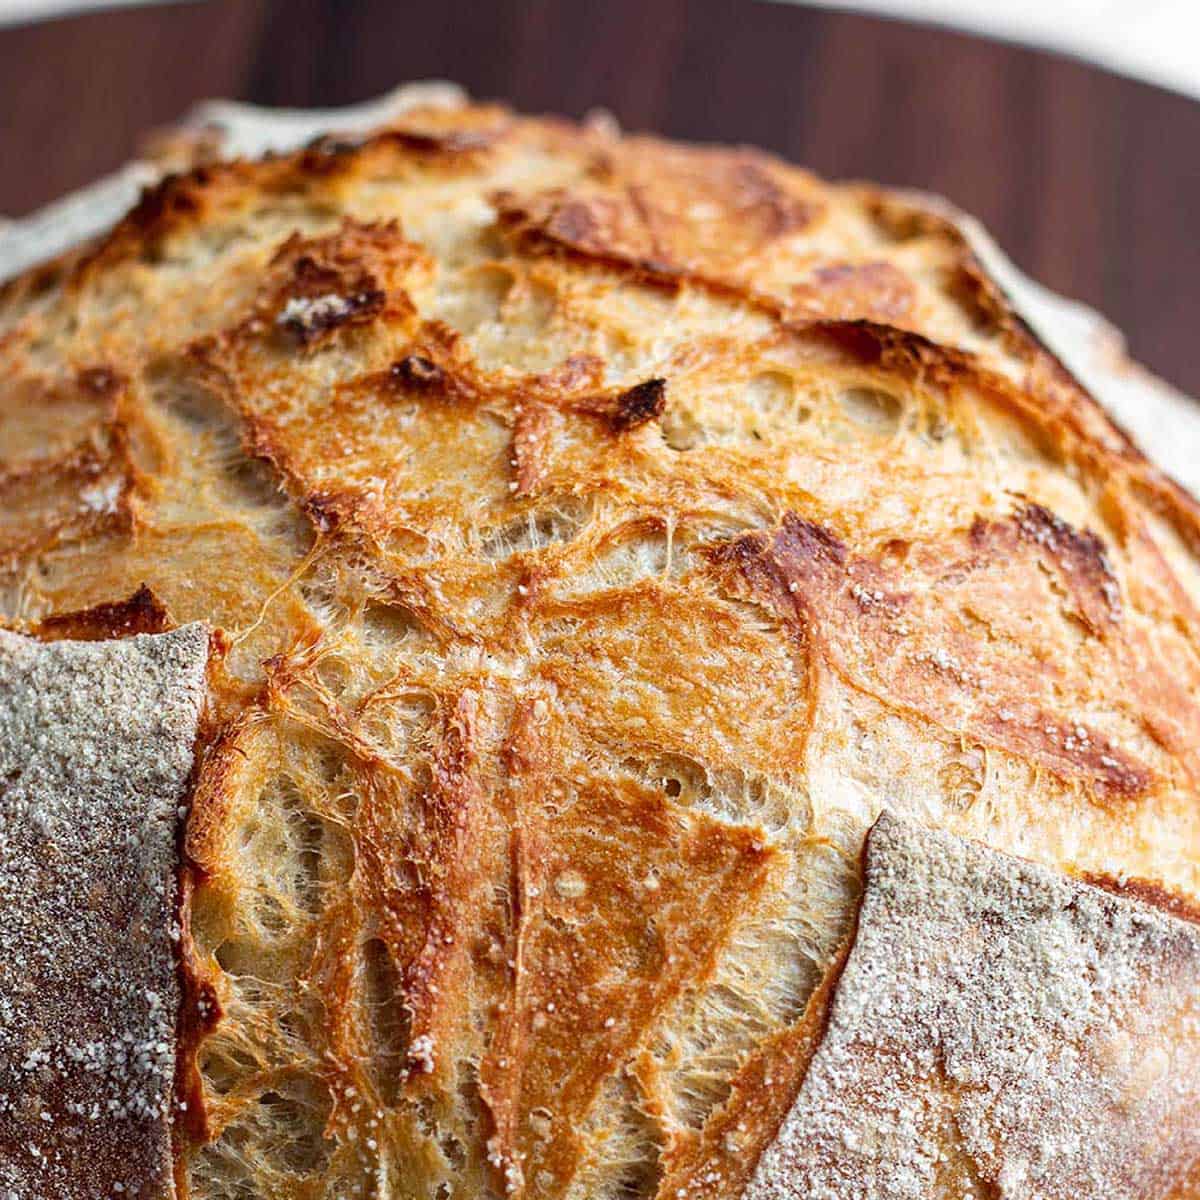 A fresh loaf of sourdough bread.